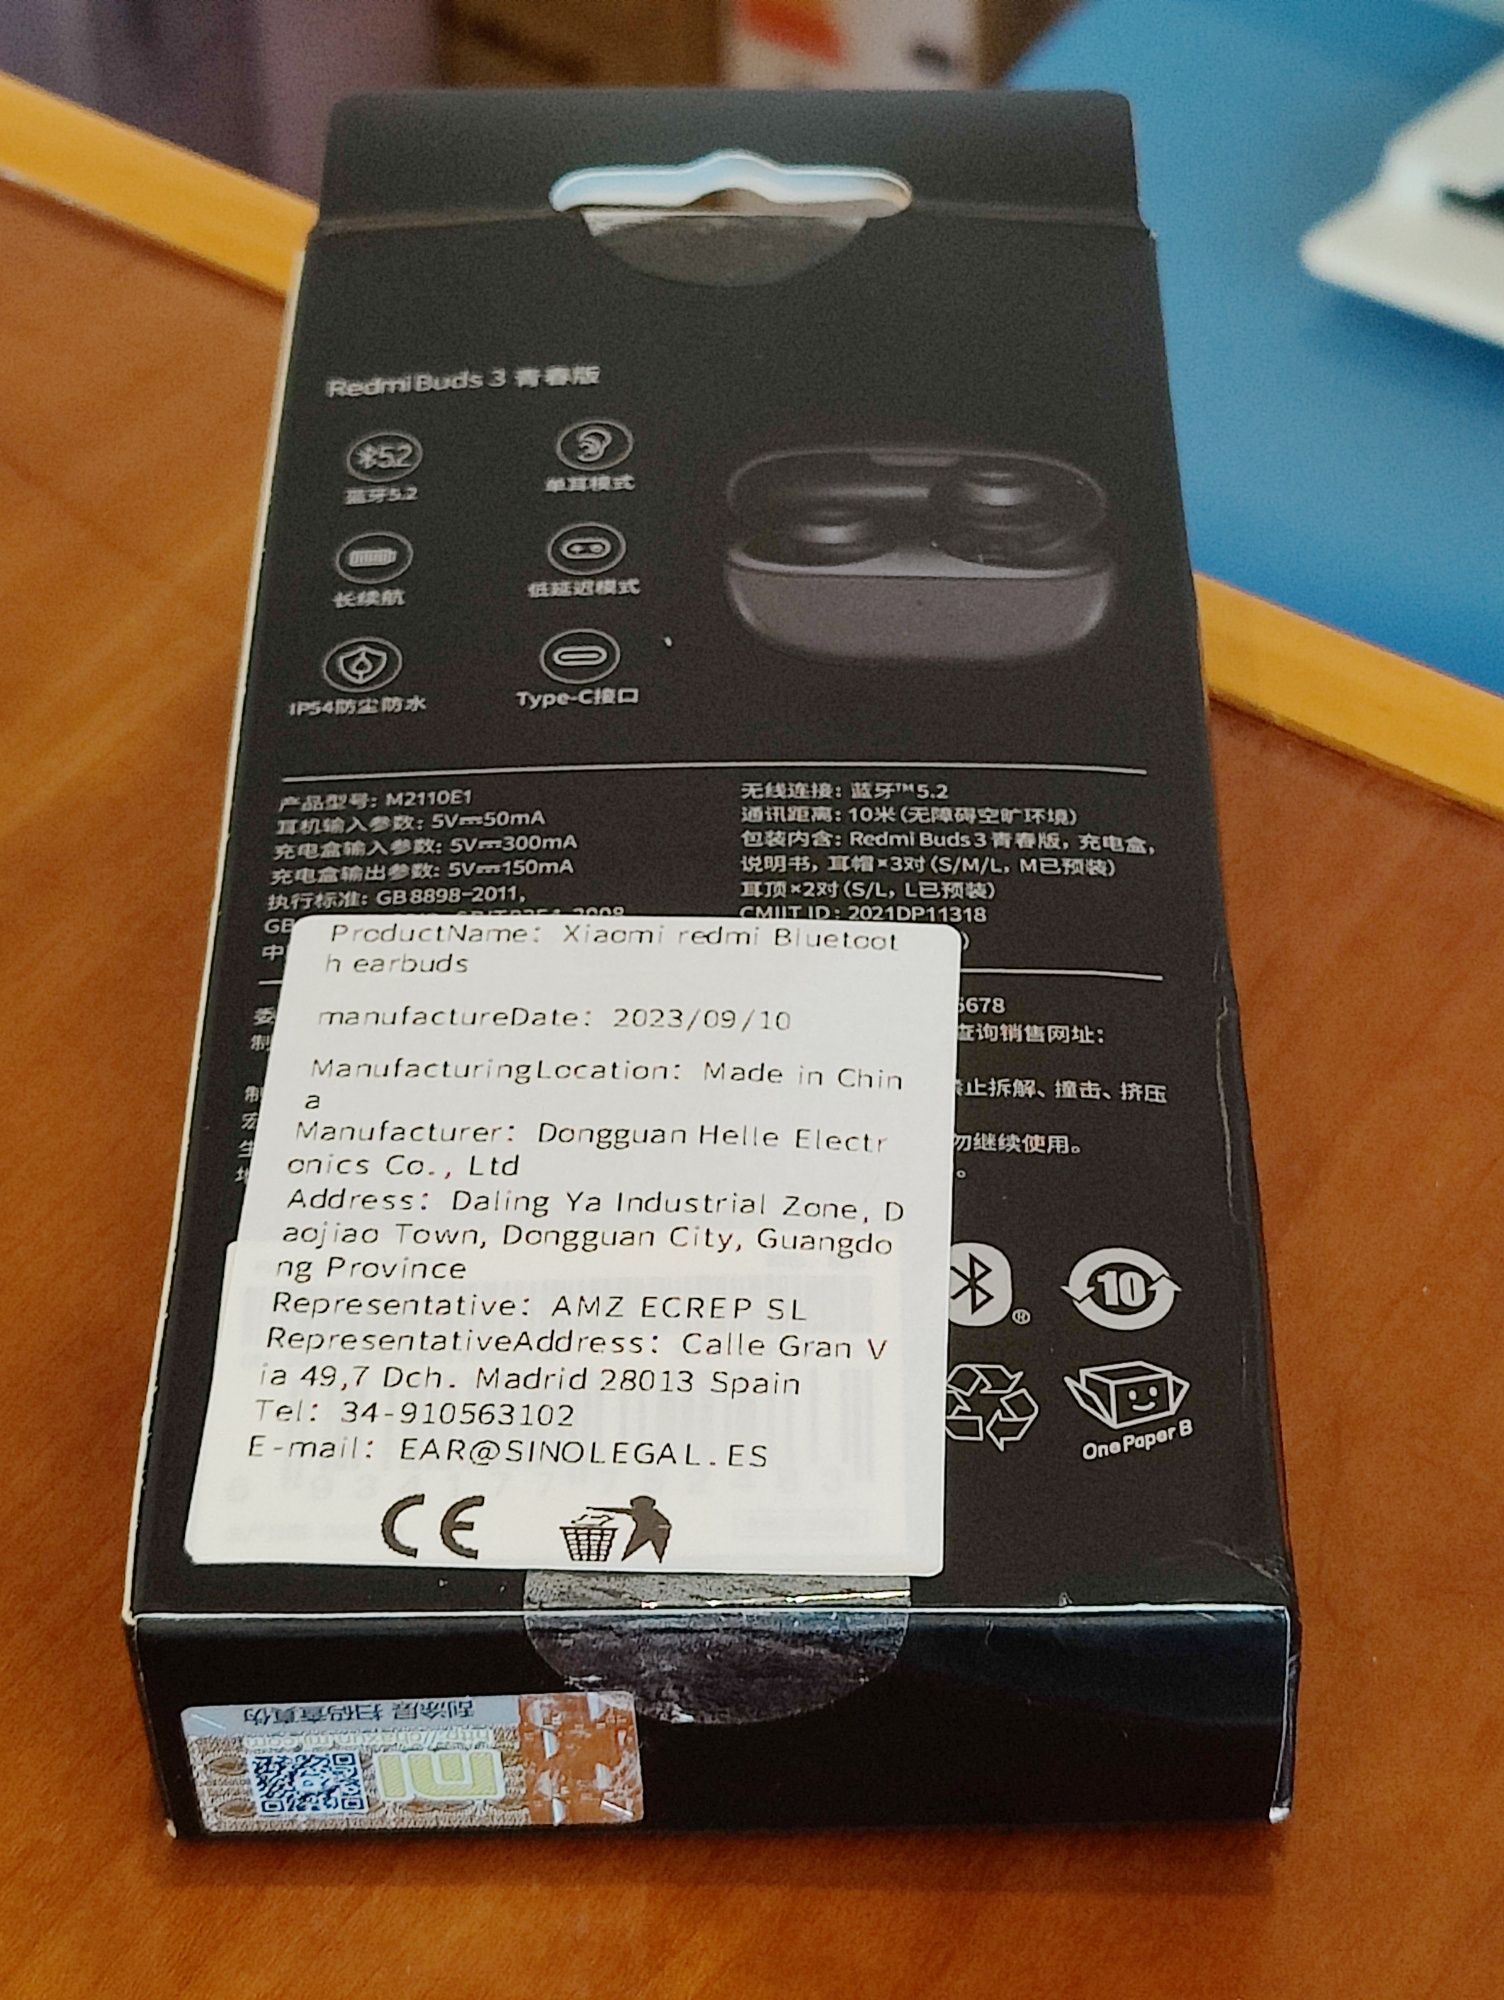 Phones Xiaomi Redmi Buds 3, novos na caixa